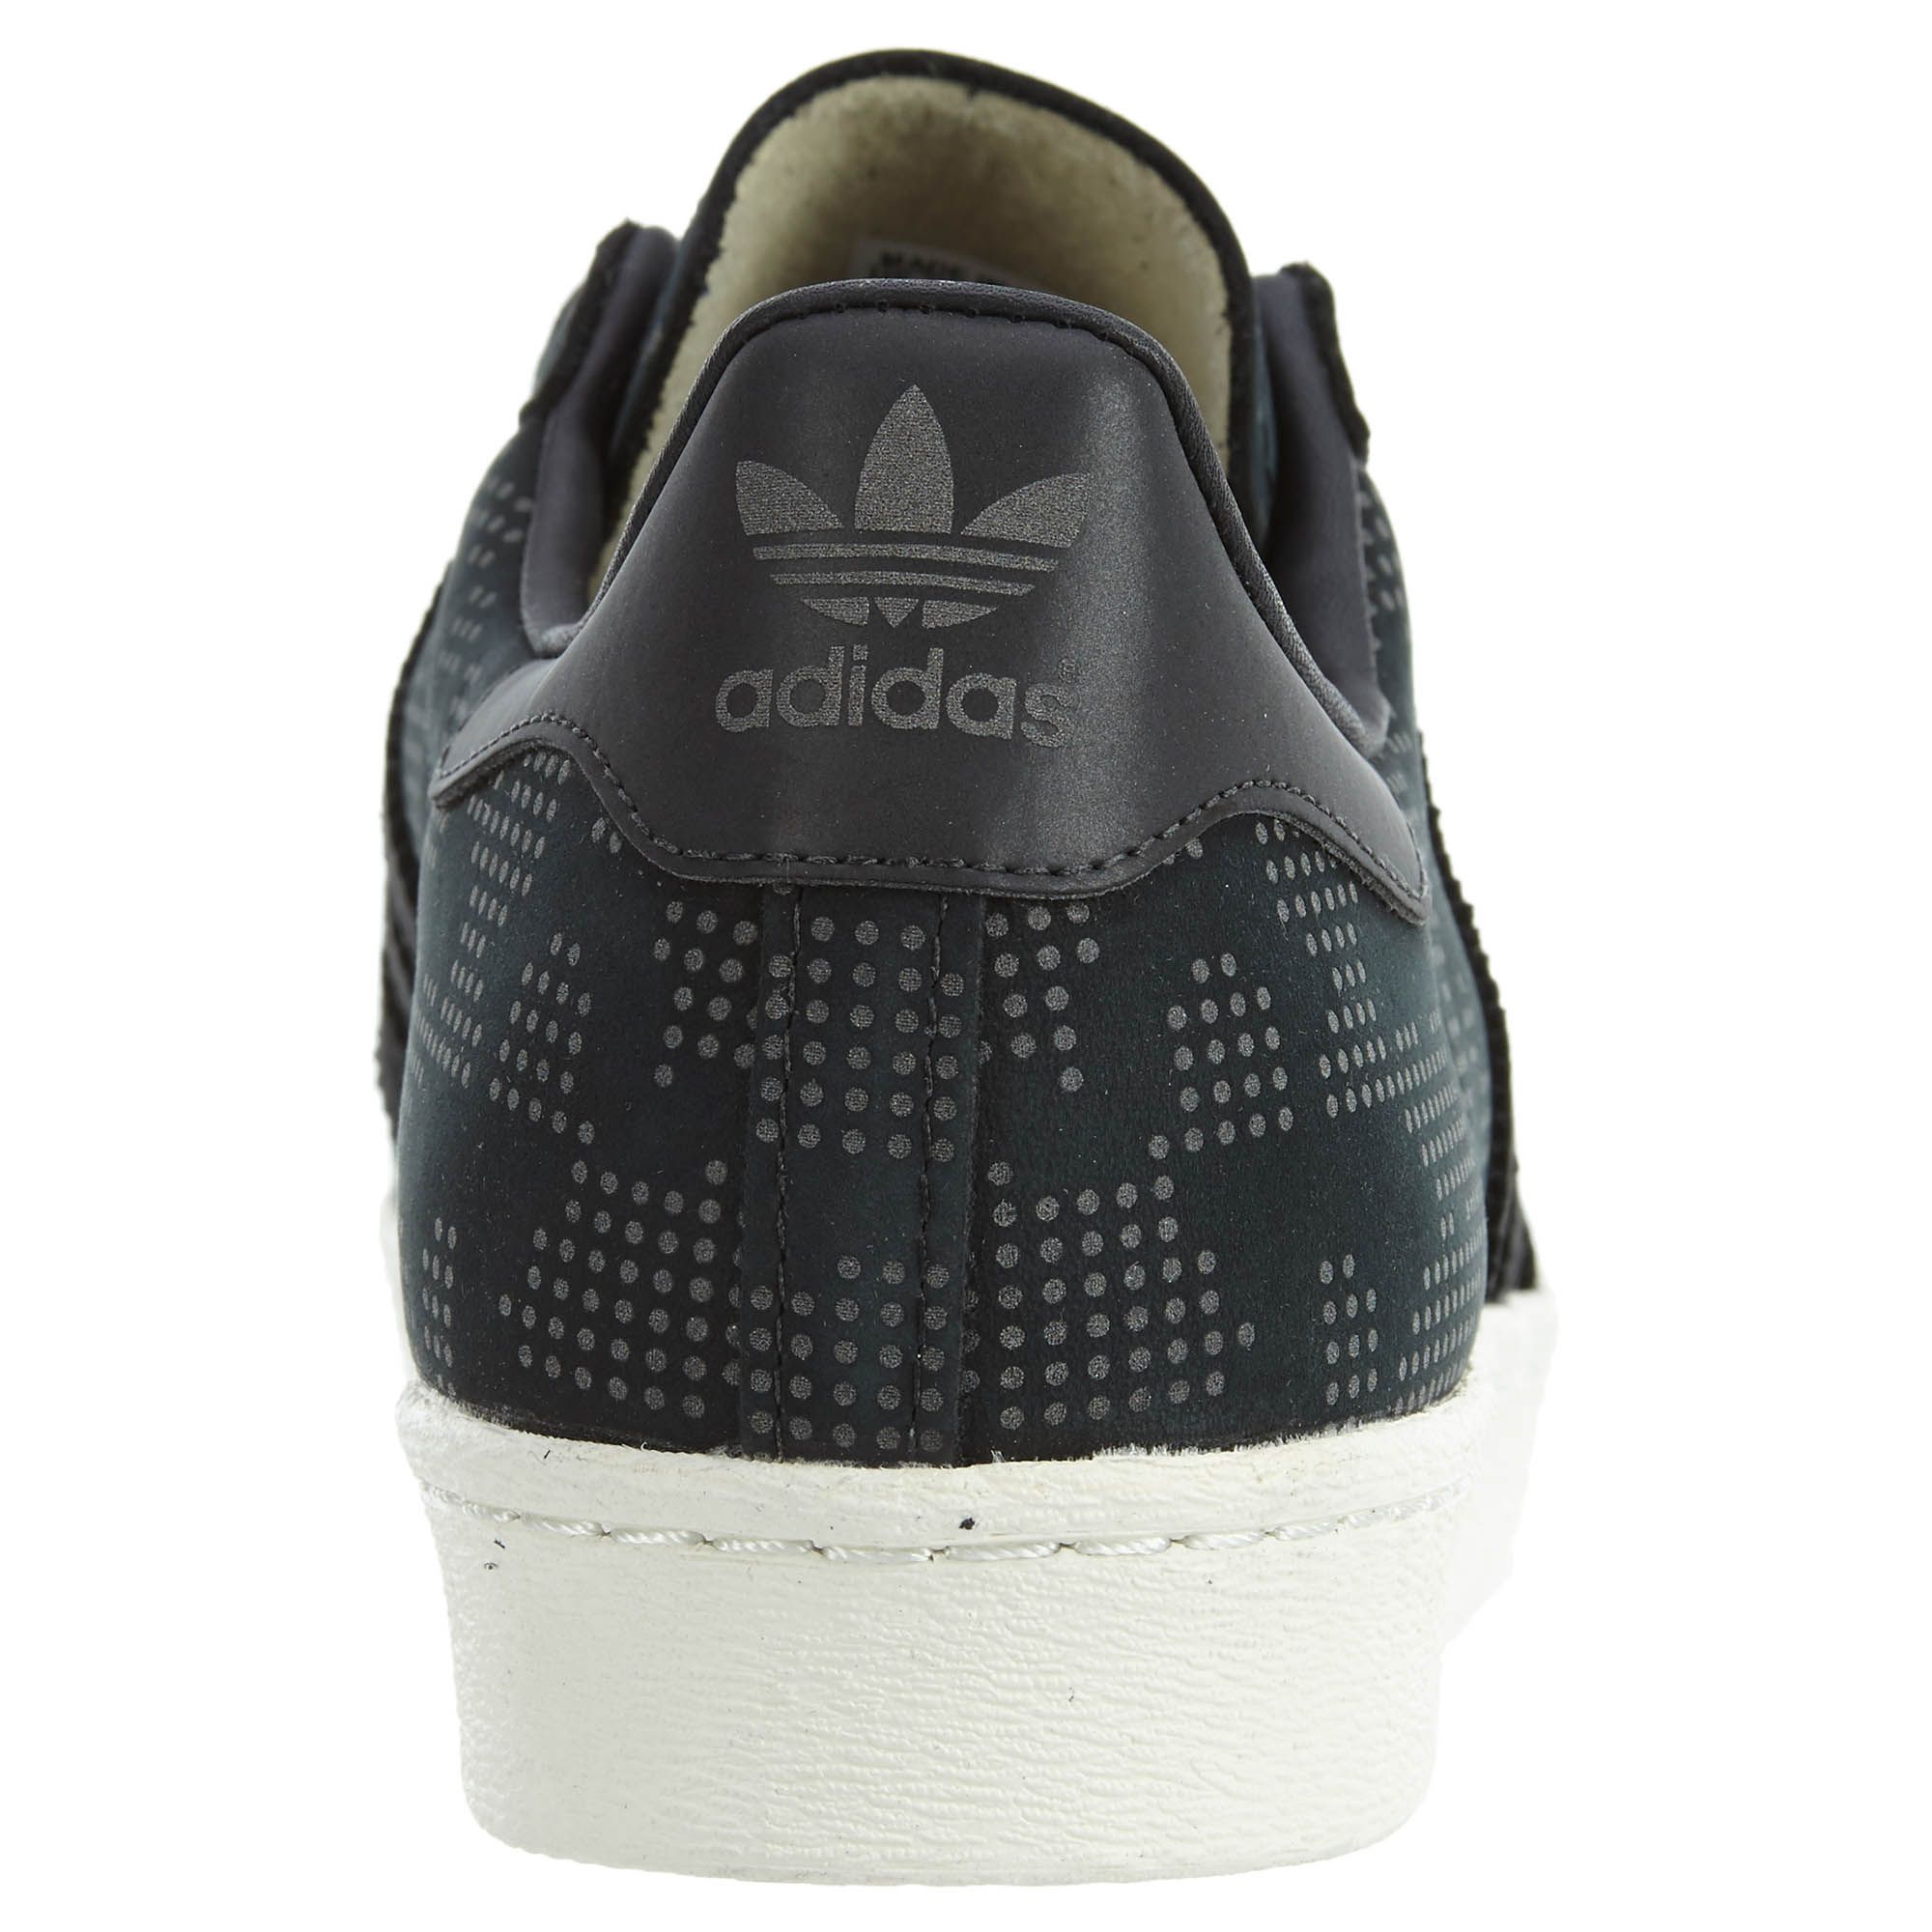 Adidas Superstar 80s Camo 15 Mens Style : B33840-Cblack/Owhite